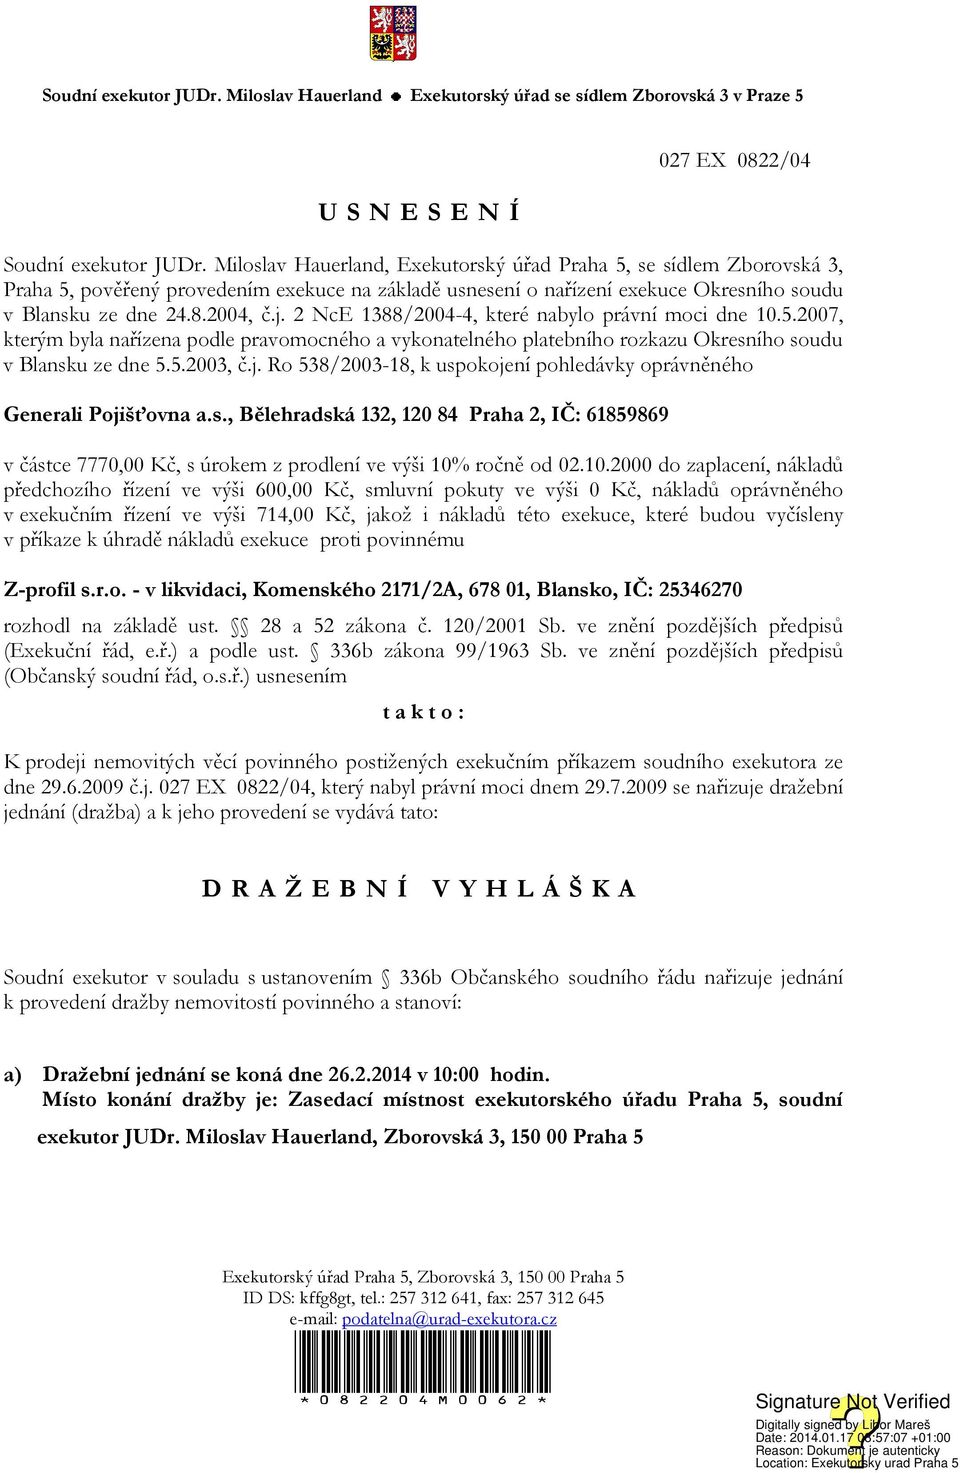 2 NcE 1388/2004-4, které nabylo právní moci dne 10.5.2007, kterým byla nařízena podle pravomocného a vykonatelného platebního rozkazu Okresního soudu v Blansku ze dne 5.5.2003, č.j.